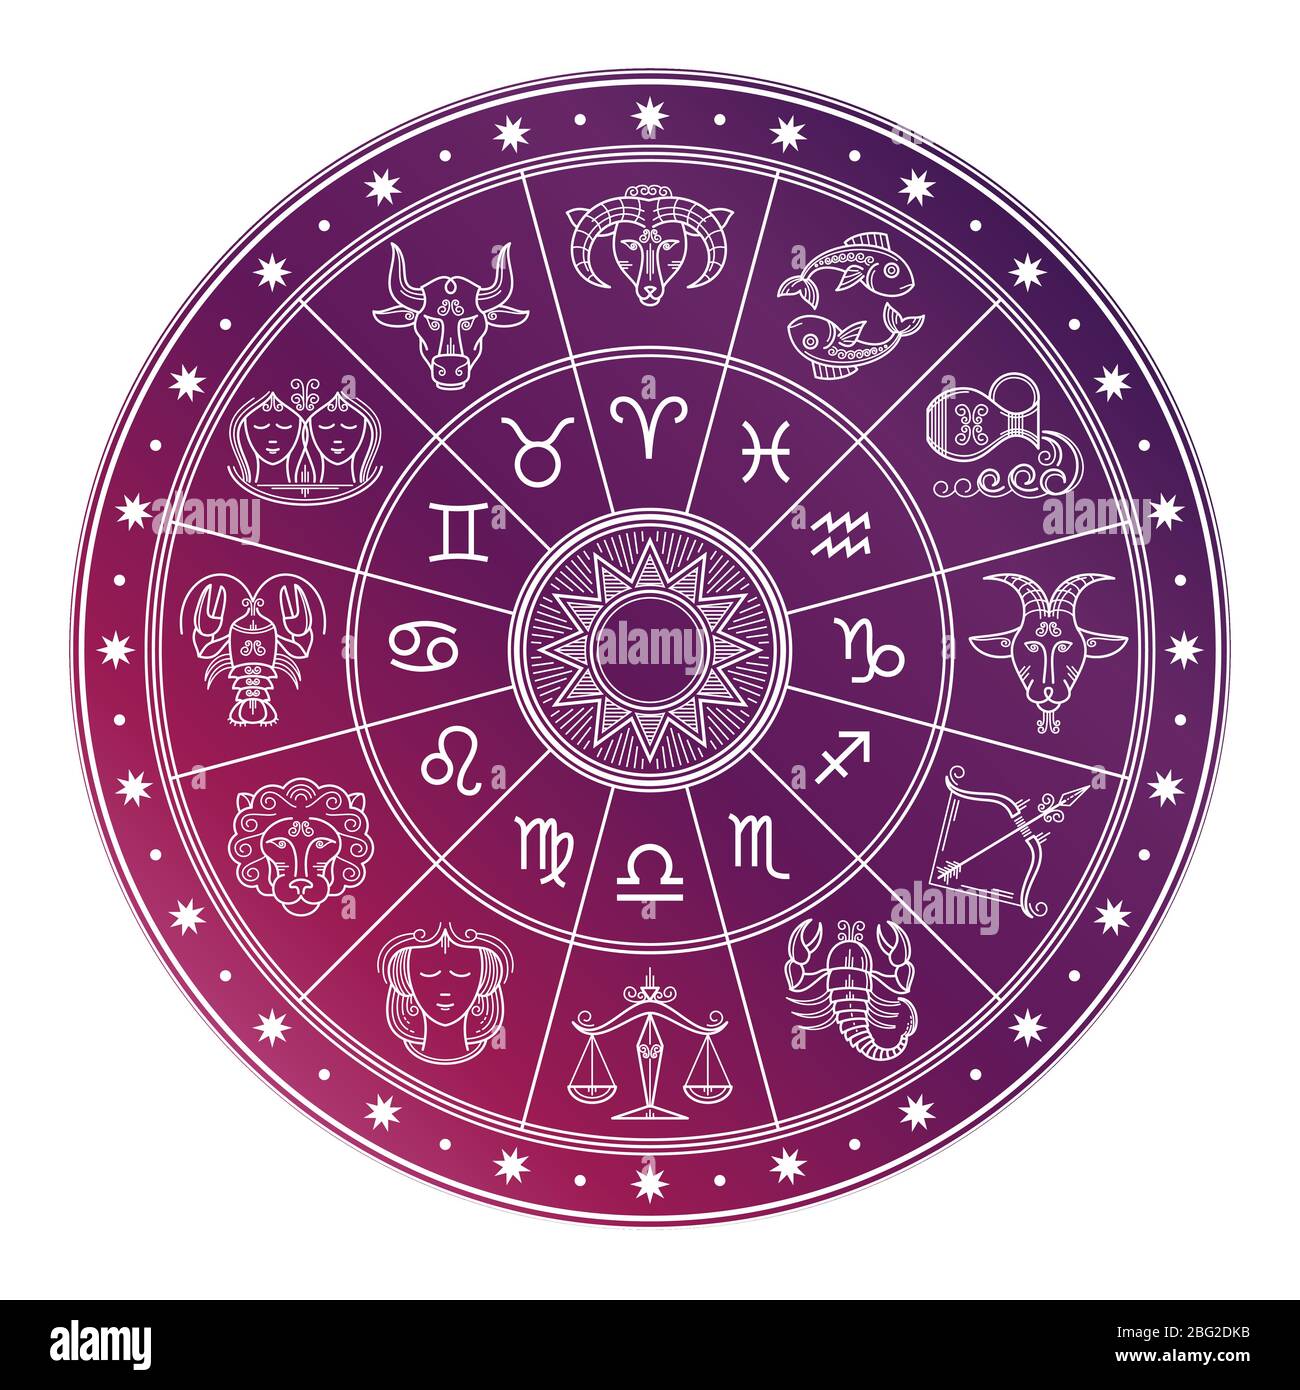 Cerchio di oroscopo astrologico luminoso e bianco con segni zodiacali isolati su sfondo bianco. Illustrazione vettoriale Illustrazione Vettoriale